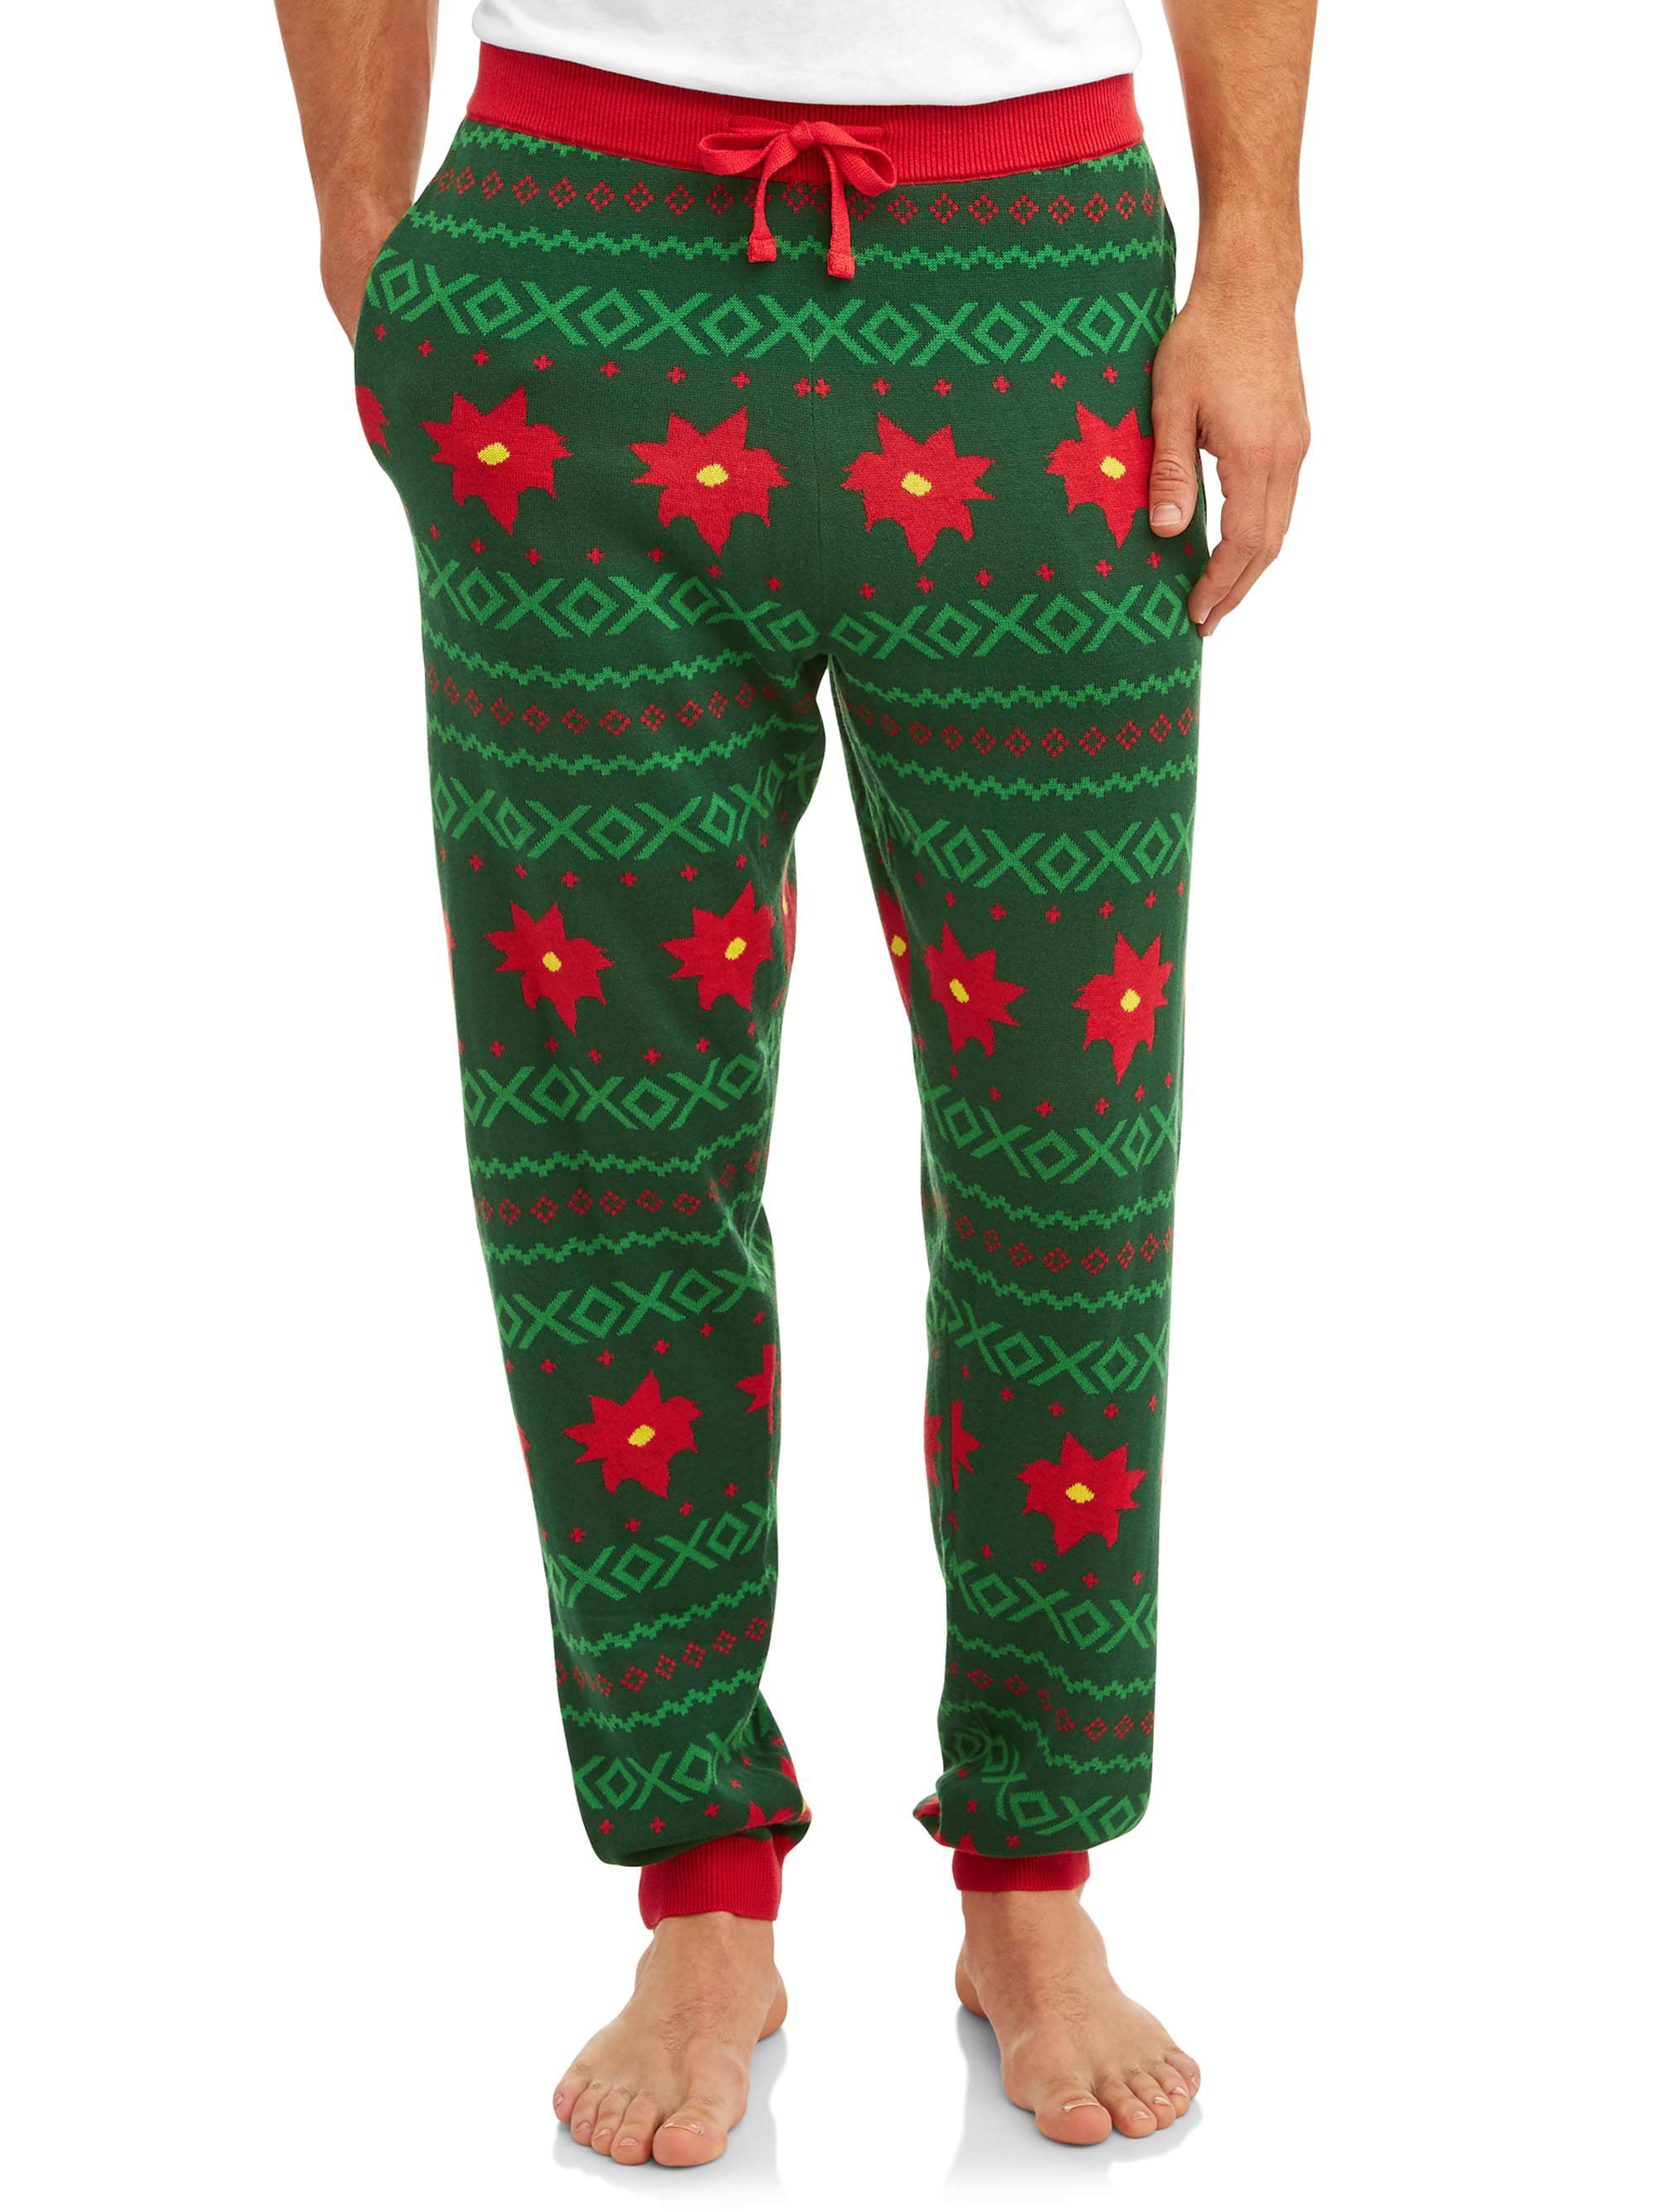 Juniors Size Medium Christmas Snowflakes Drawstring Pajama pants NWT